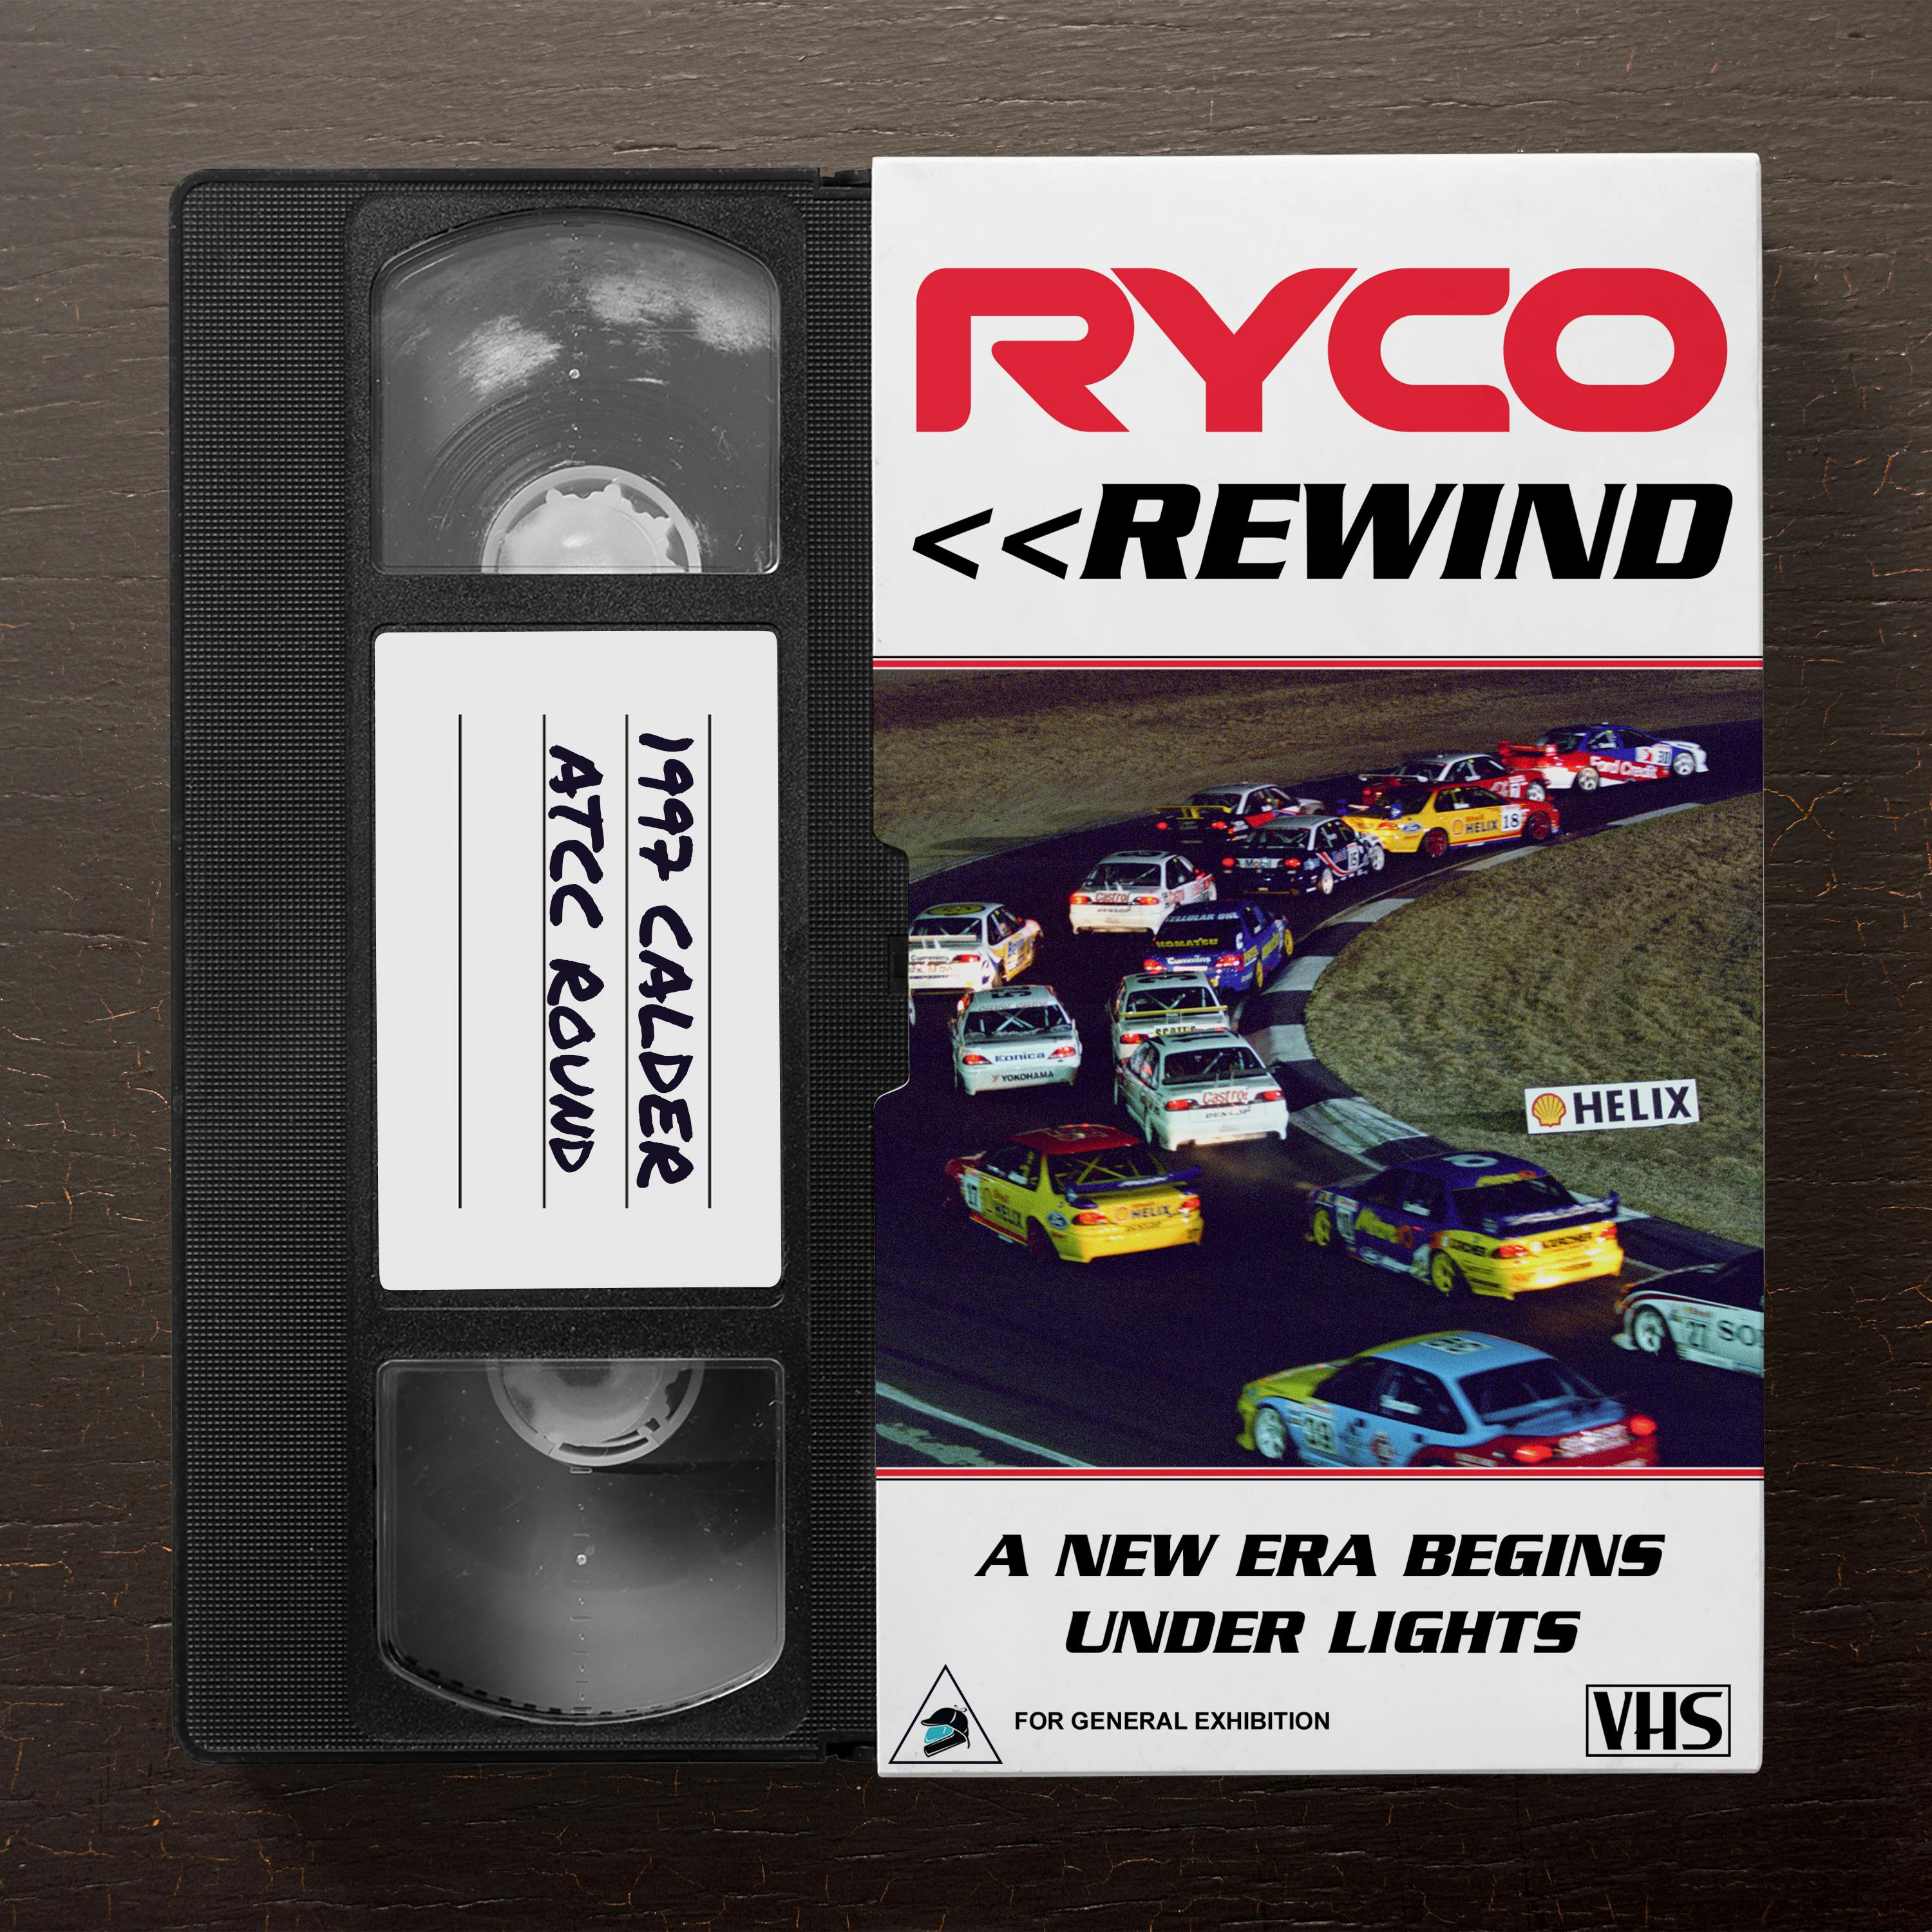 Ryco Rewind: A new era begins under lights